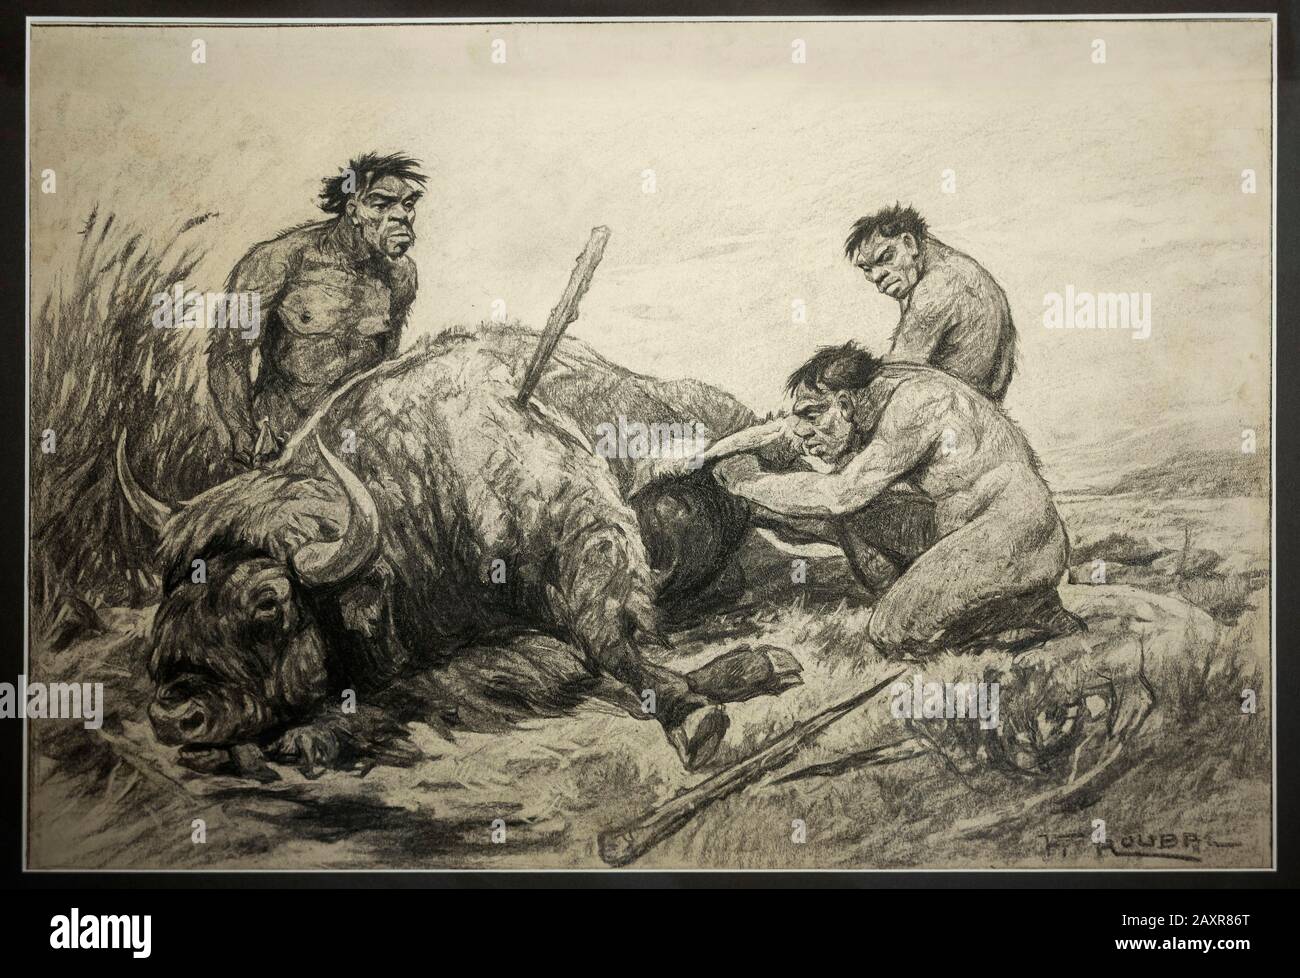 Disegno a carbone di F.Roubal 1930, uomini Neanderthal su bisonte ucciso, Museo Paleontologico, Monaco, Baviera superiore, Baviera, Germania Foto Stock